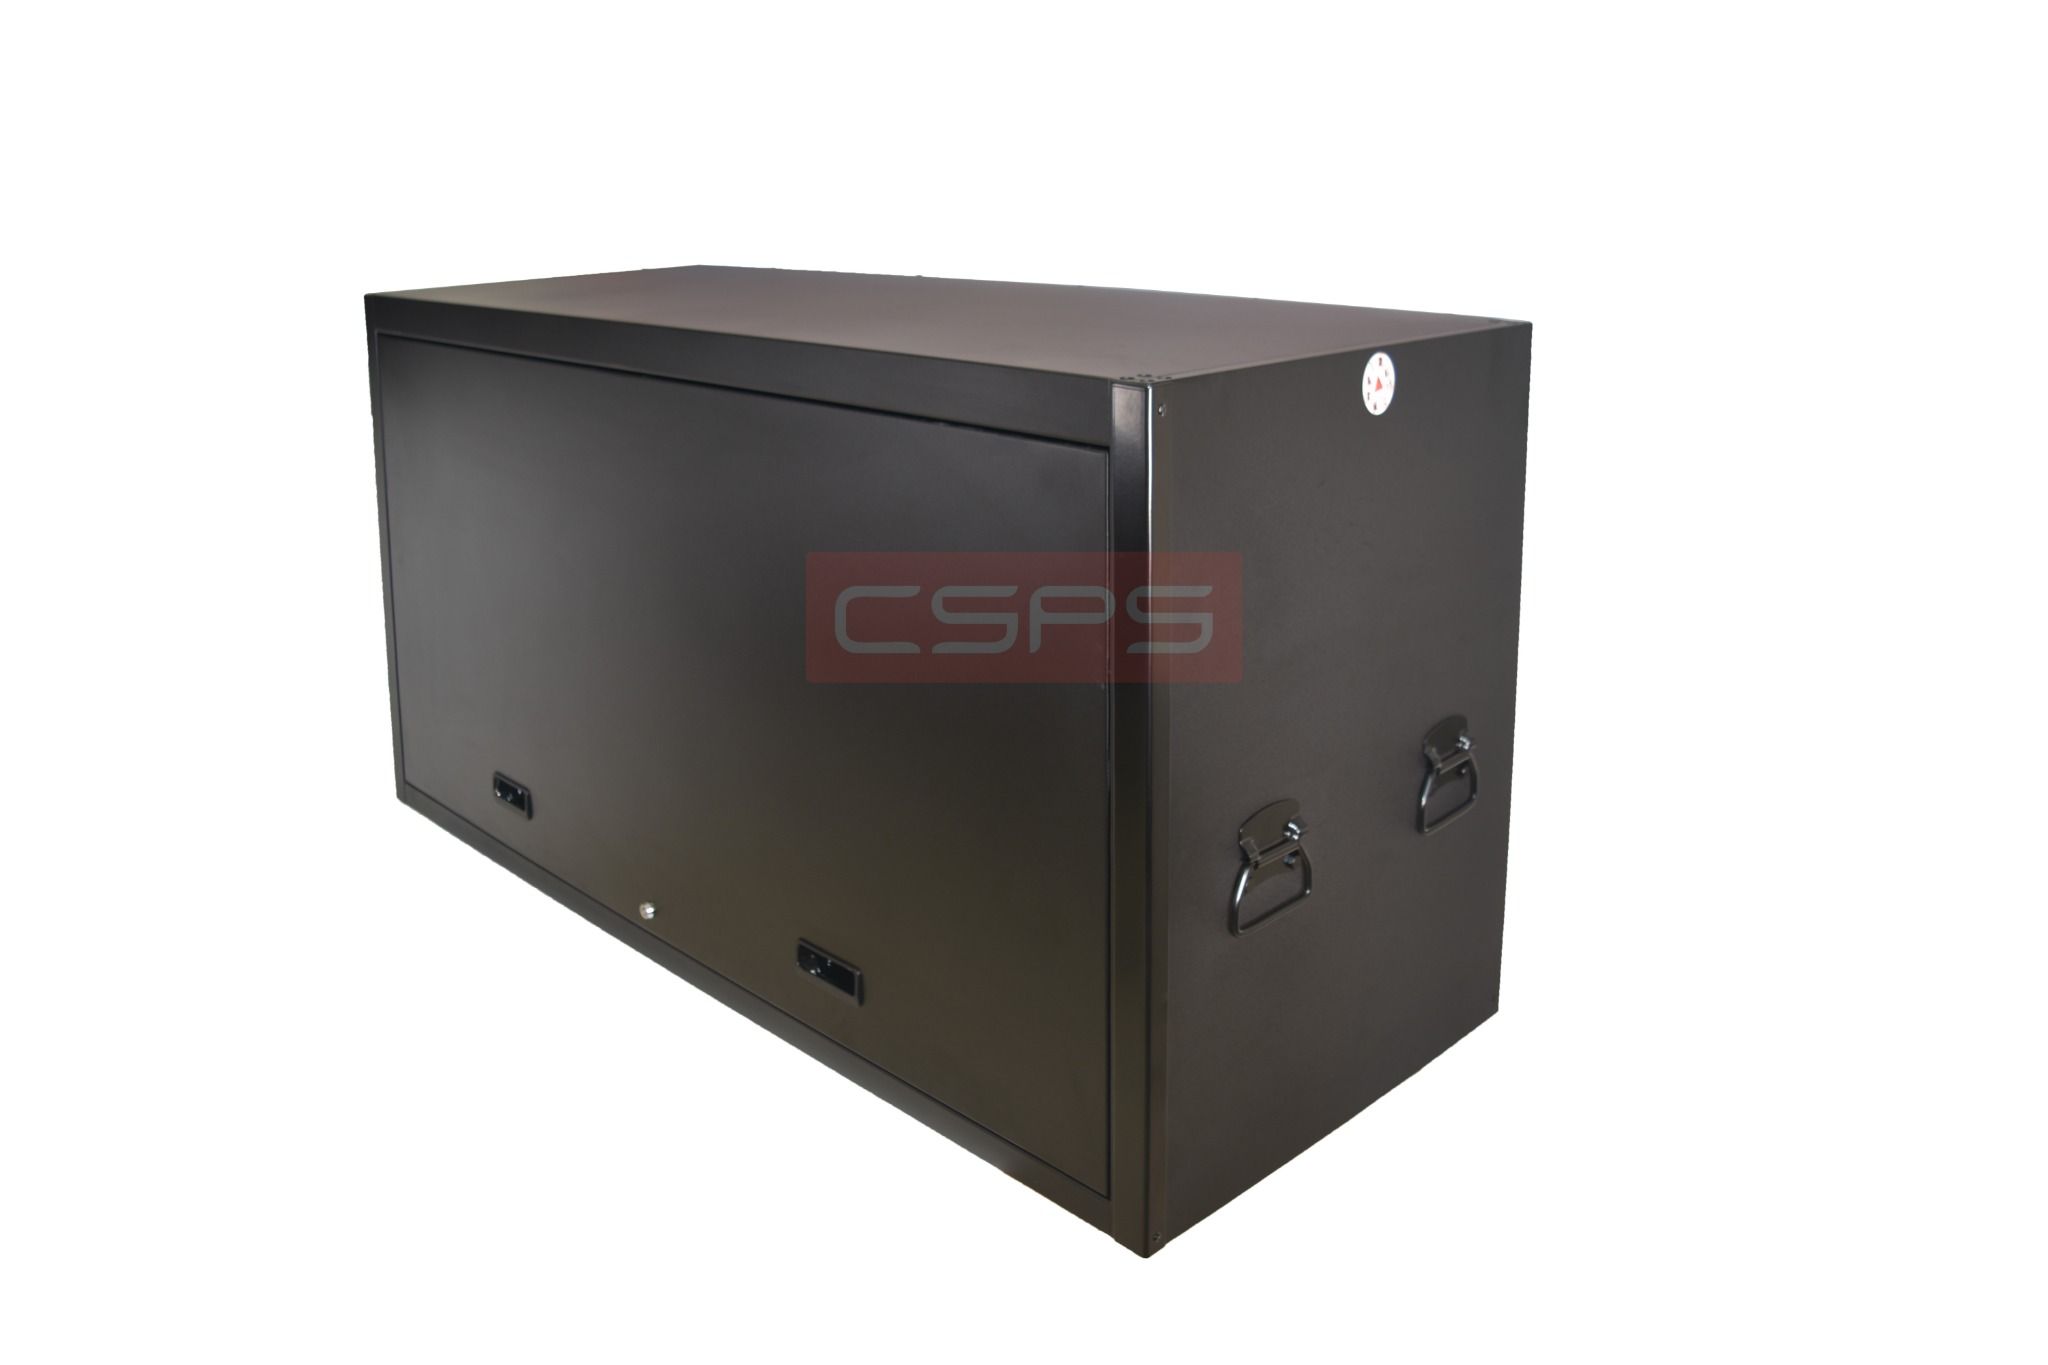  Tủ dụng cụ CSPS 155cm - 01 cửa màu đen 